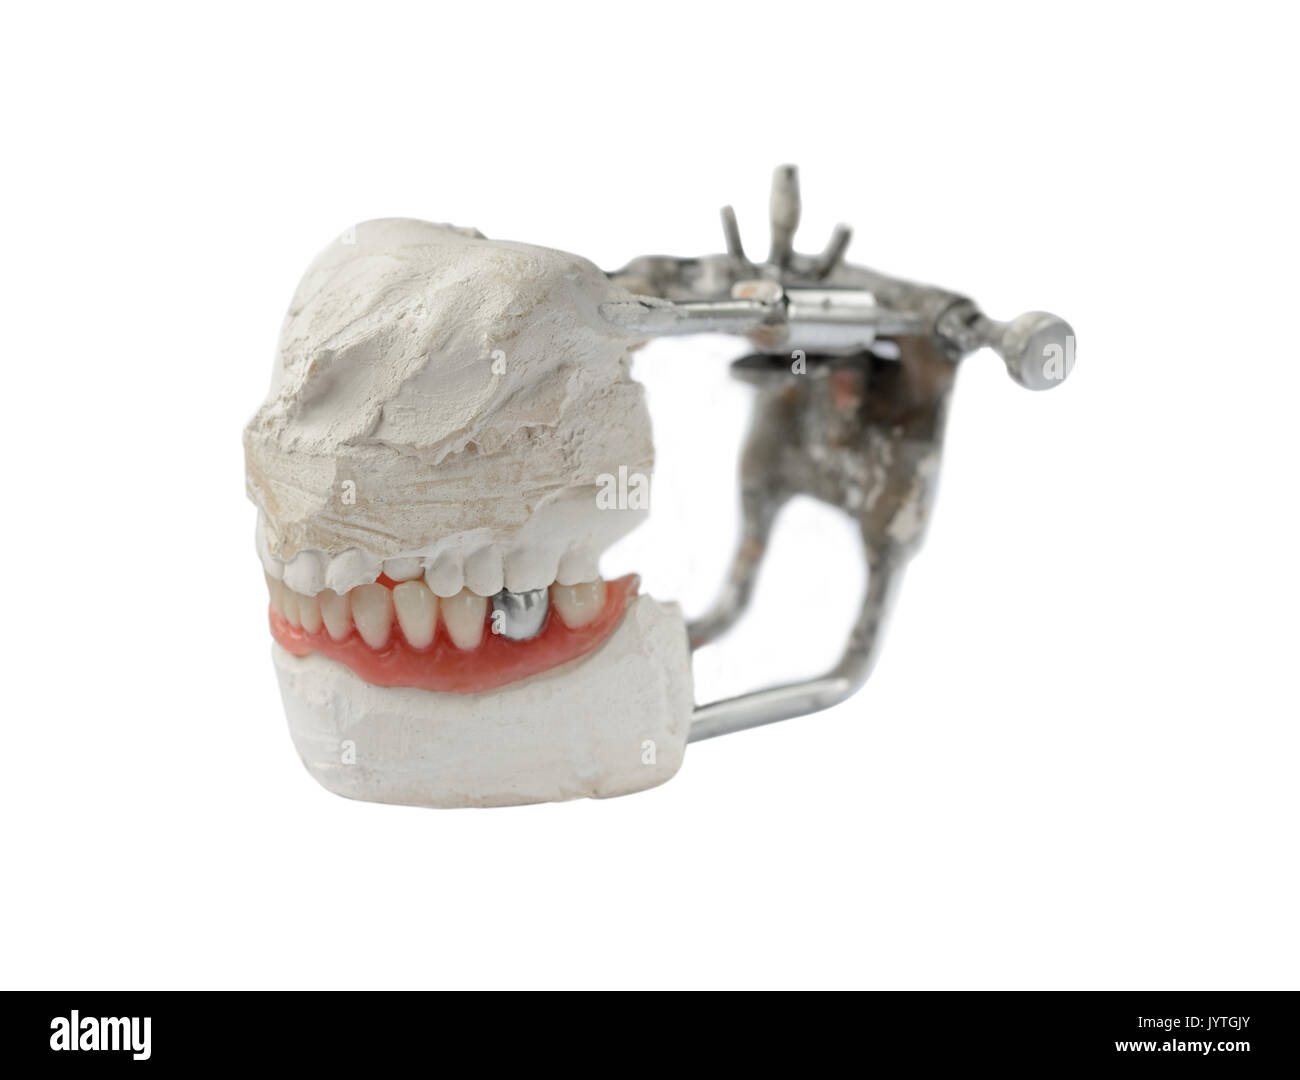 Dent artificielle, prothèse dentaire avec de fausses dents en métal argenté, la couronne sur la dent. Dentier Banque D'Images